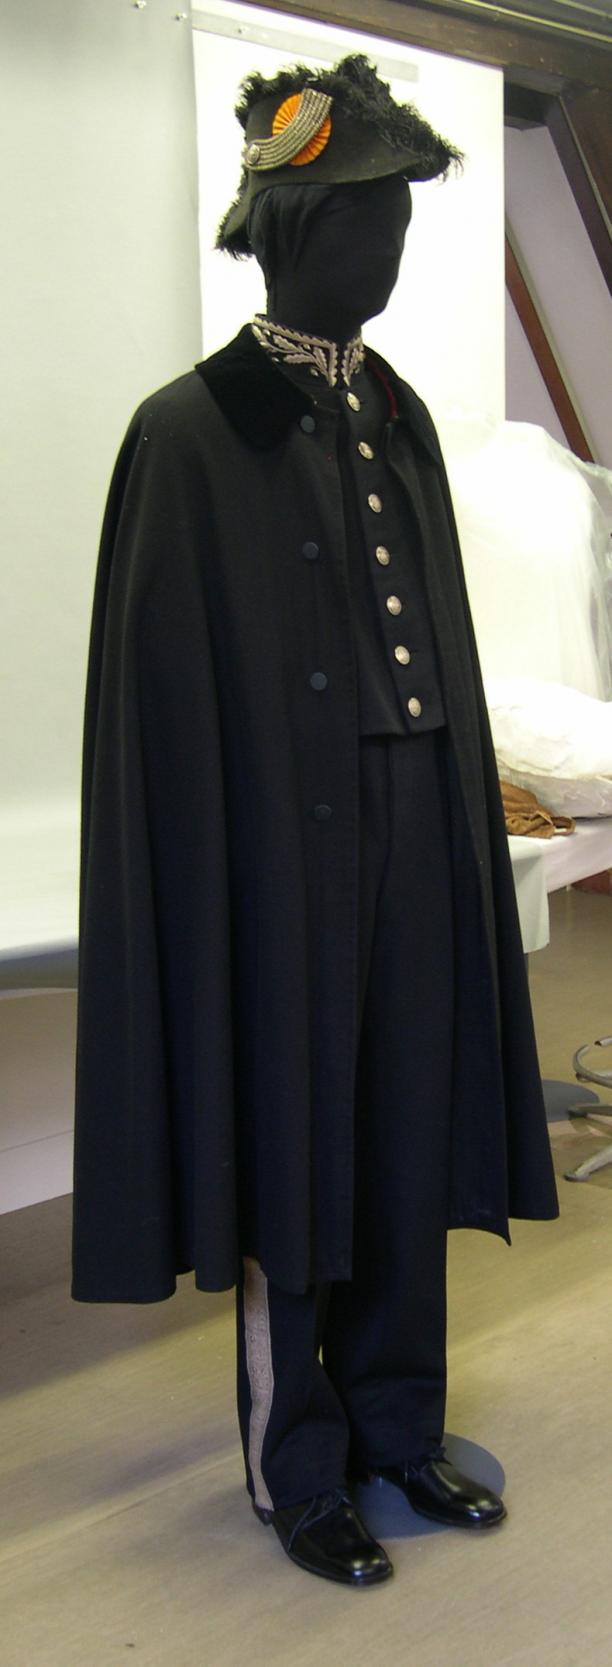 Het uniform met cape